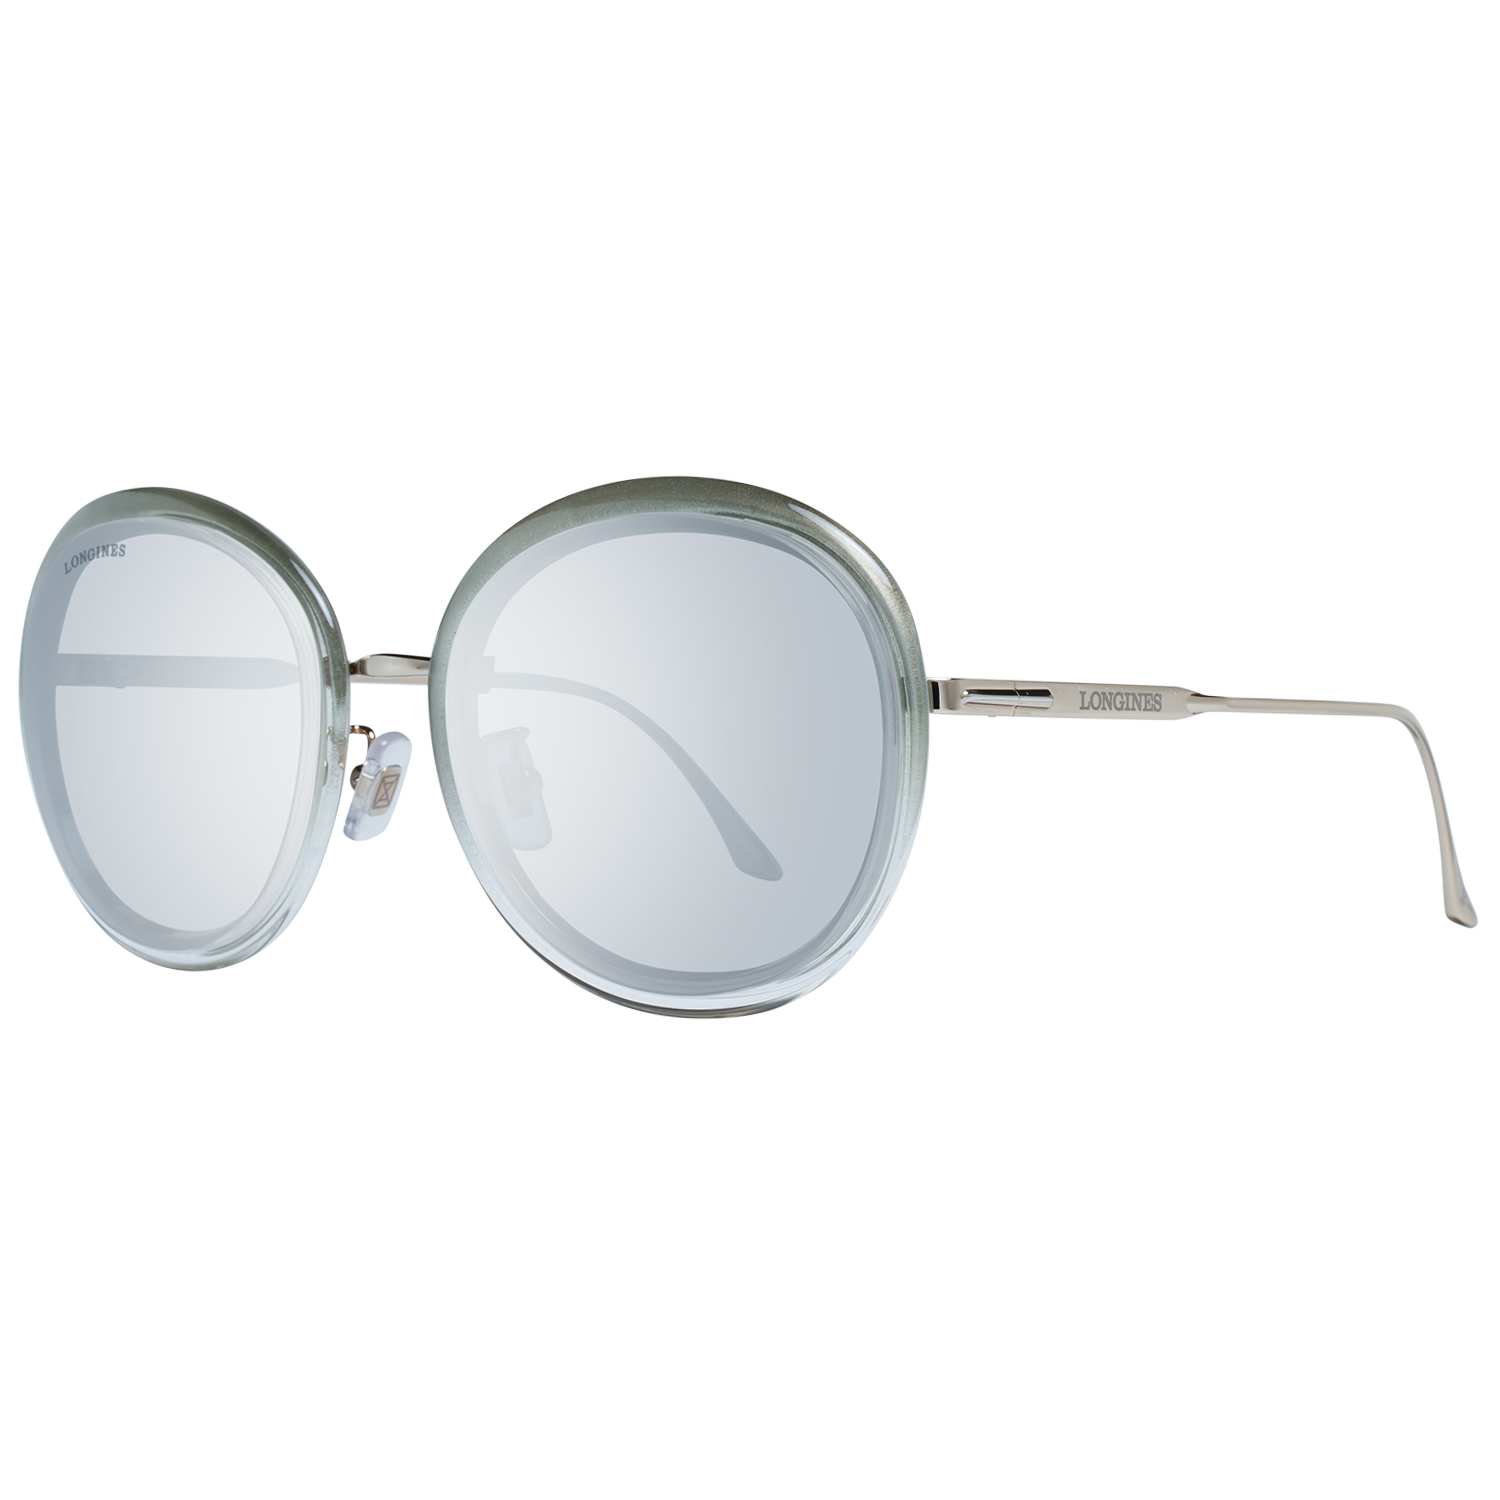 Longines Sunglasses Longines Sunglasses LG0011-H 24X 56 Eyeglasses Eyewear UK USA Australia 